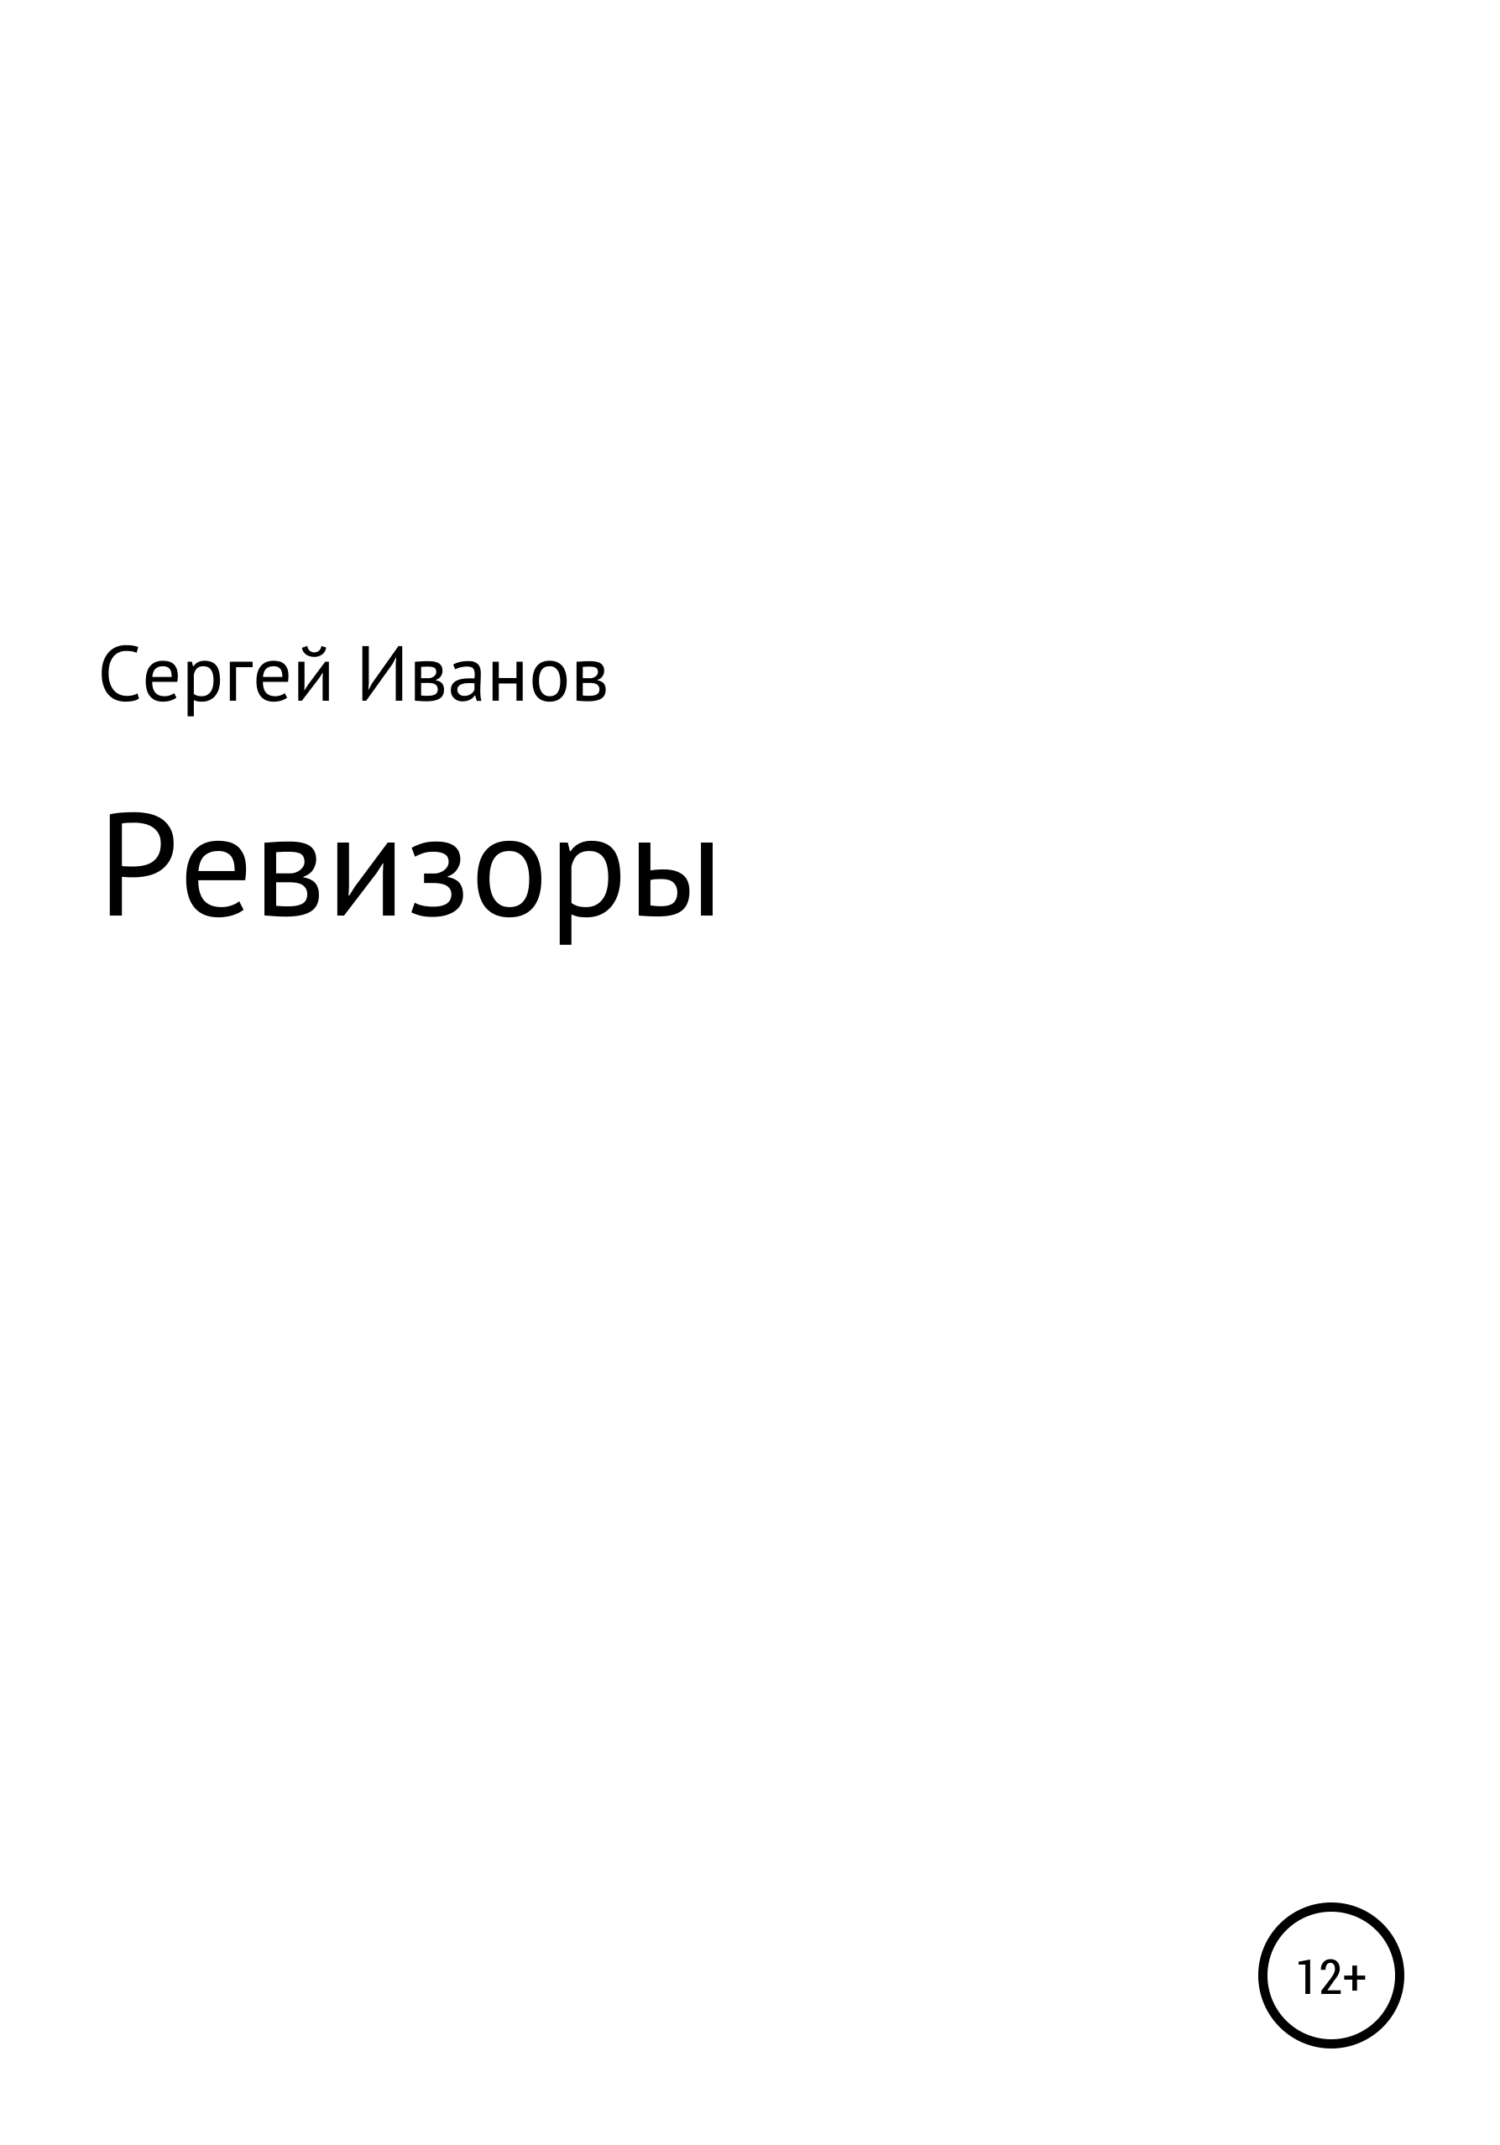 Ревизоры - Сергей Федорович Иванов